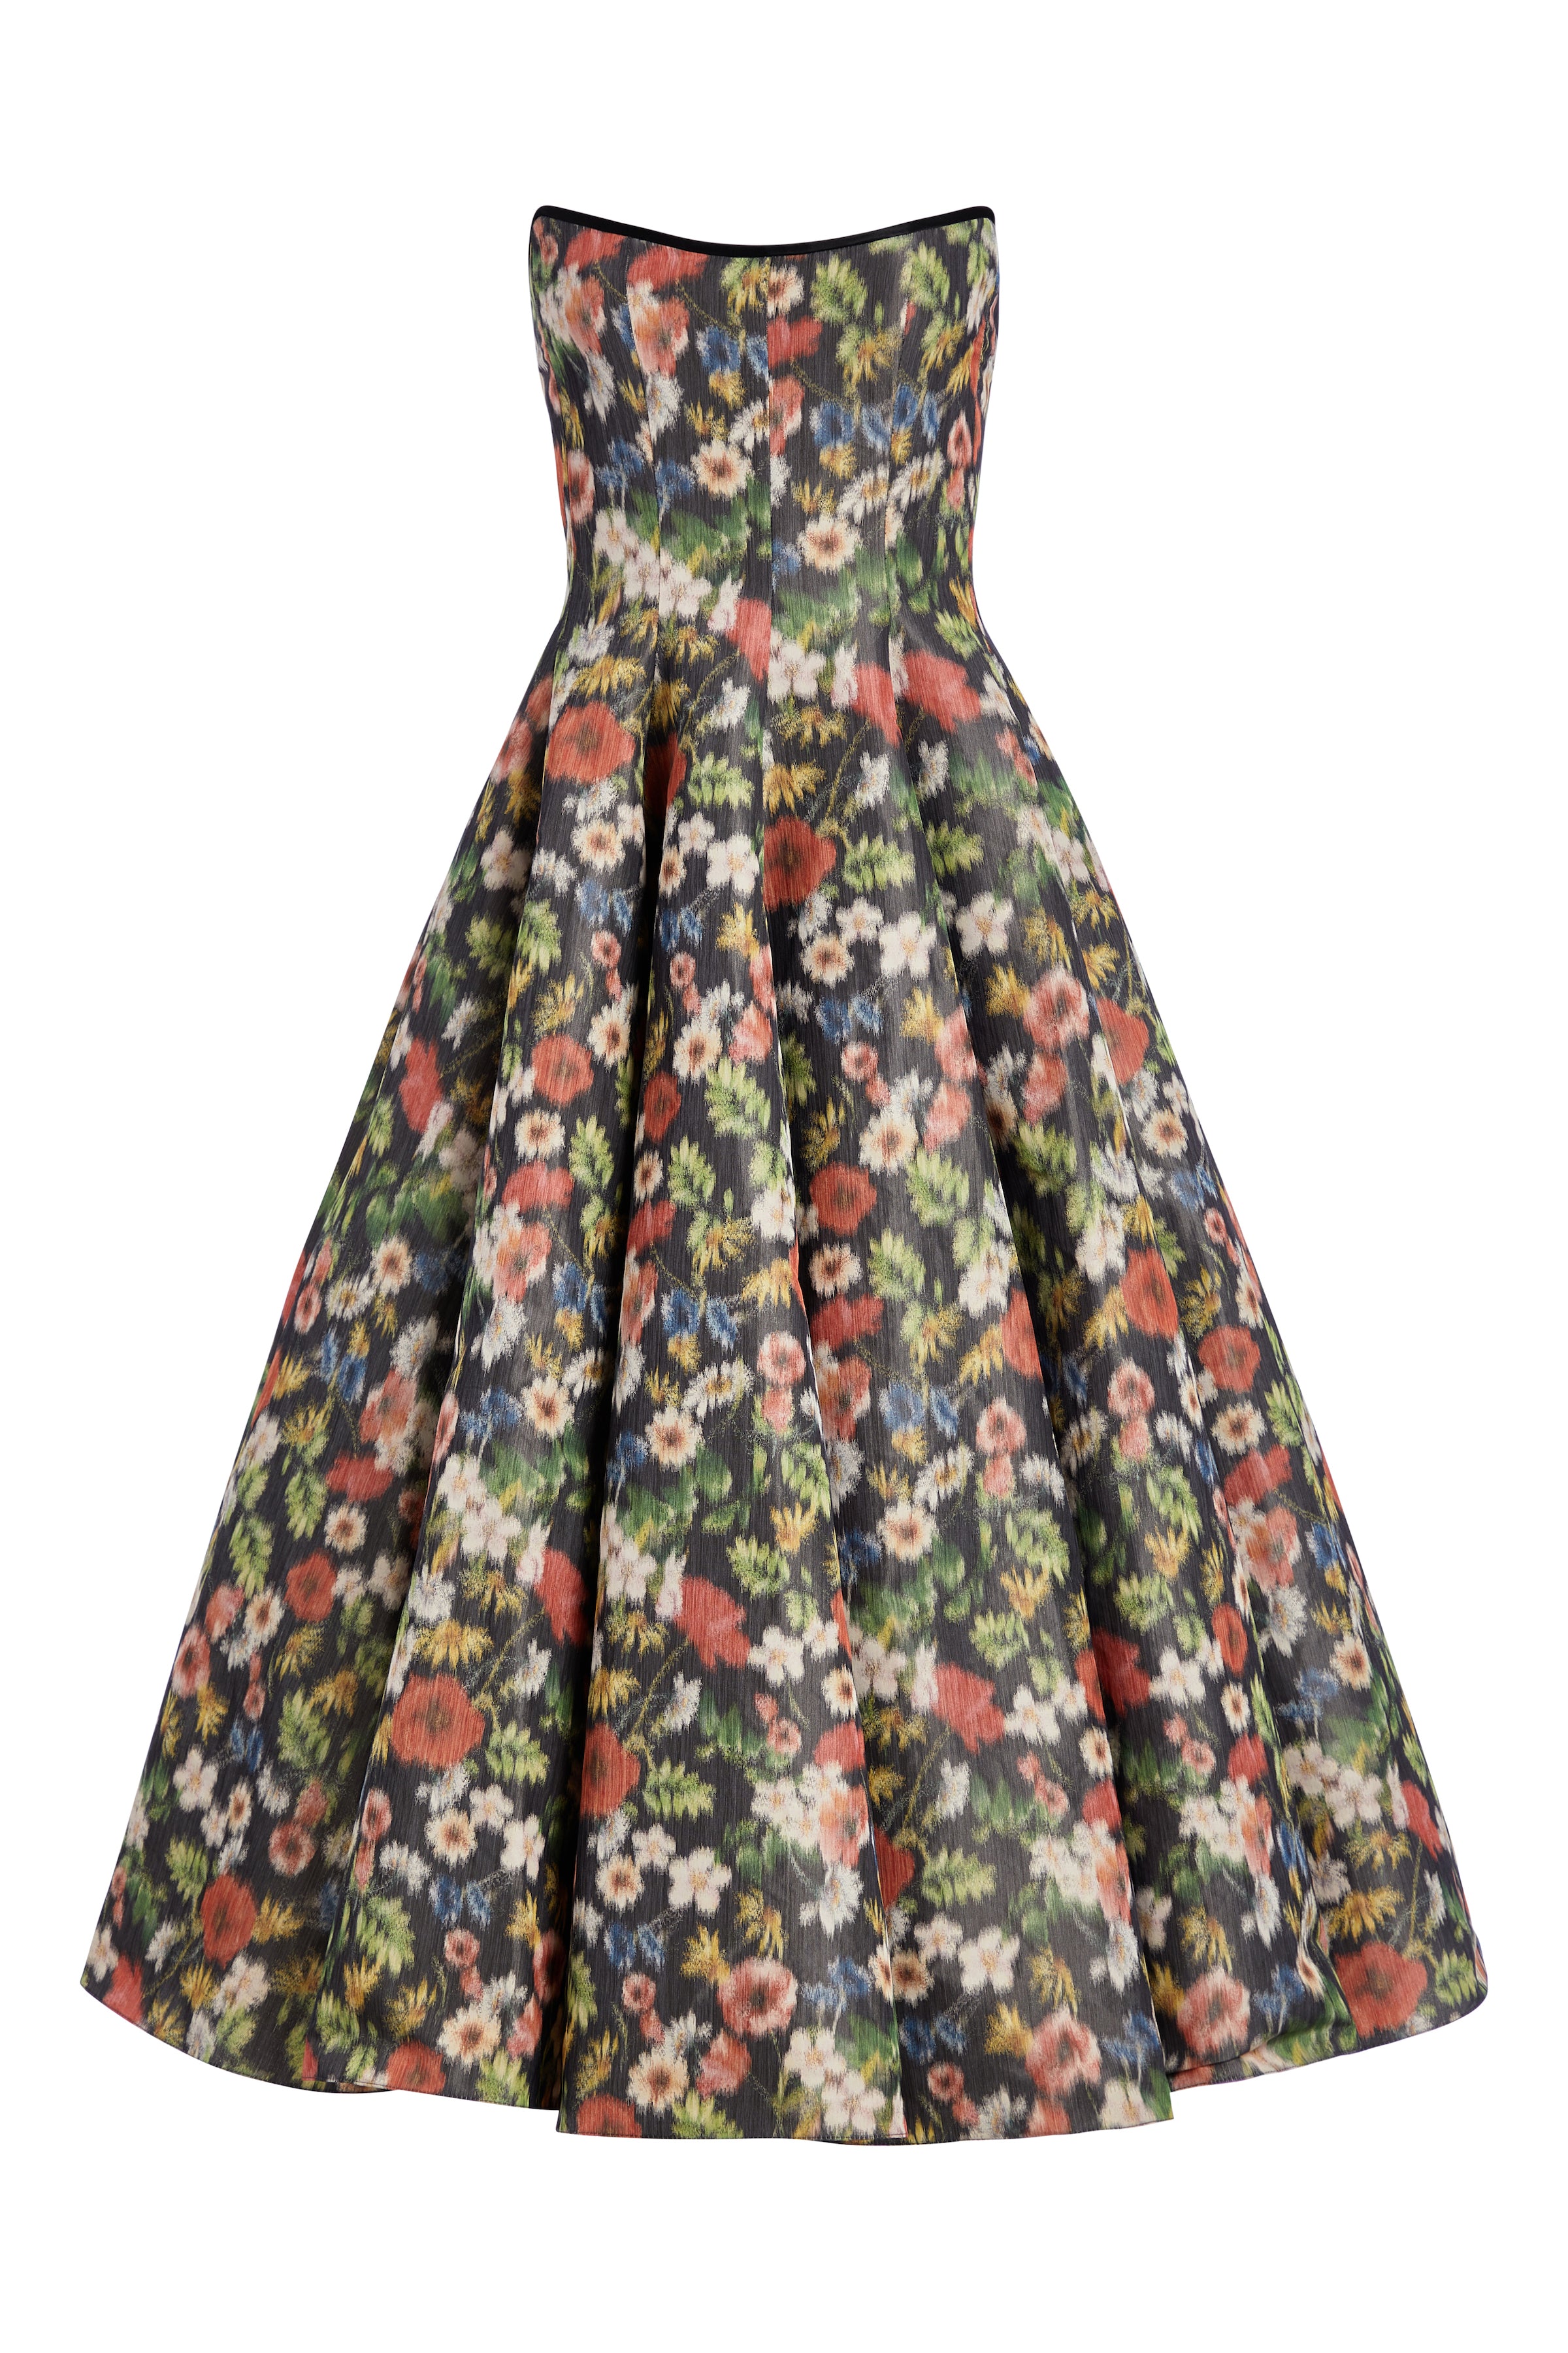 Rousseau Wildflower Ikat Dress